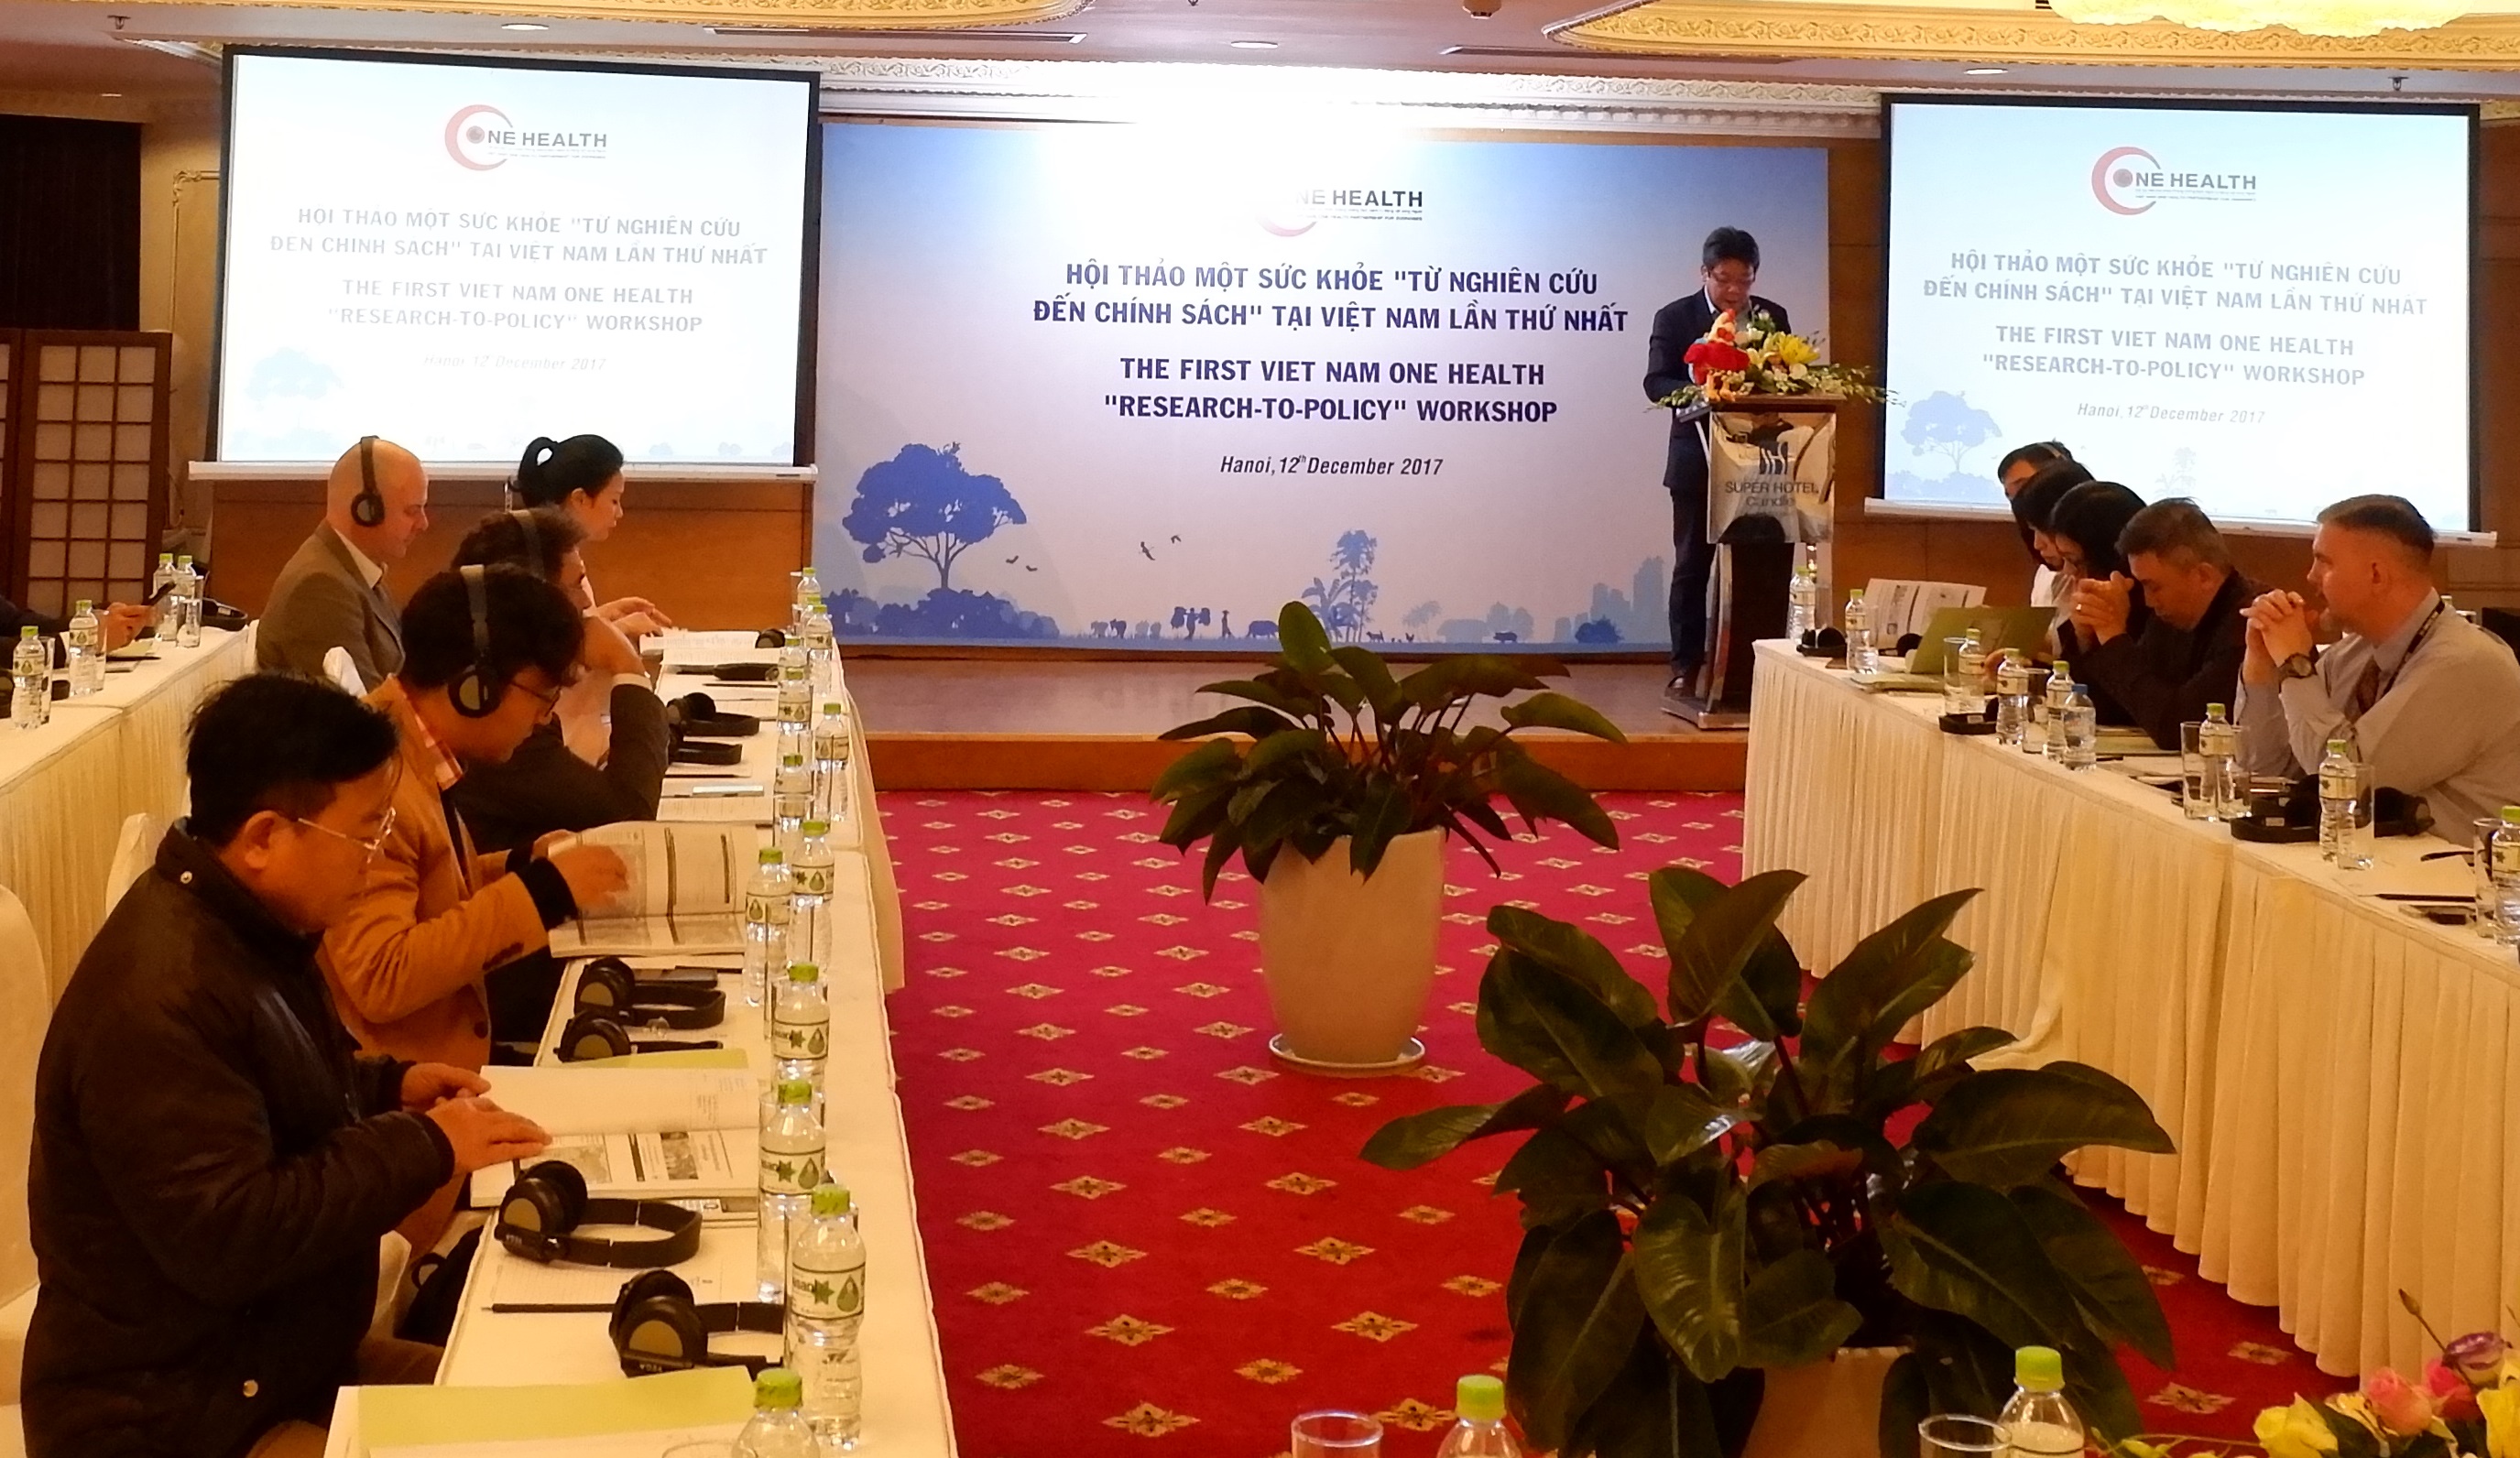 Tiền đề cho Diễn đàn Một sức khỏe thường niên - Hội nghị “Từ Nghiên cứu đến Chính sách” lần thứ nhất được tổ chức tại Hà Nội